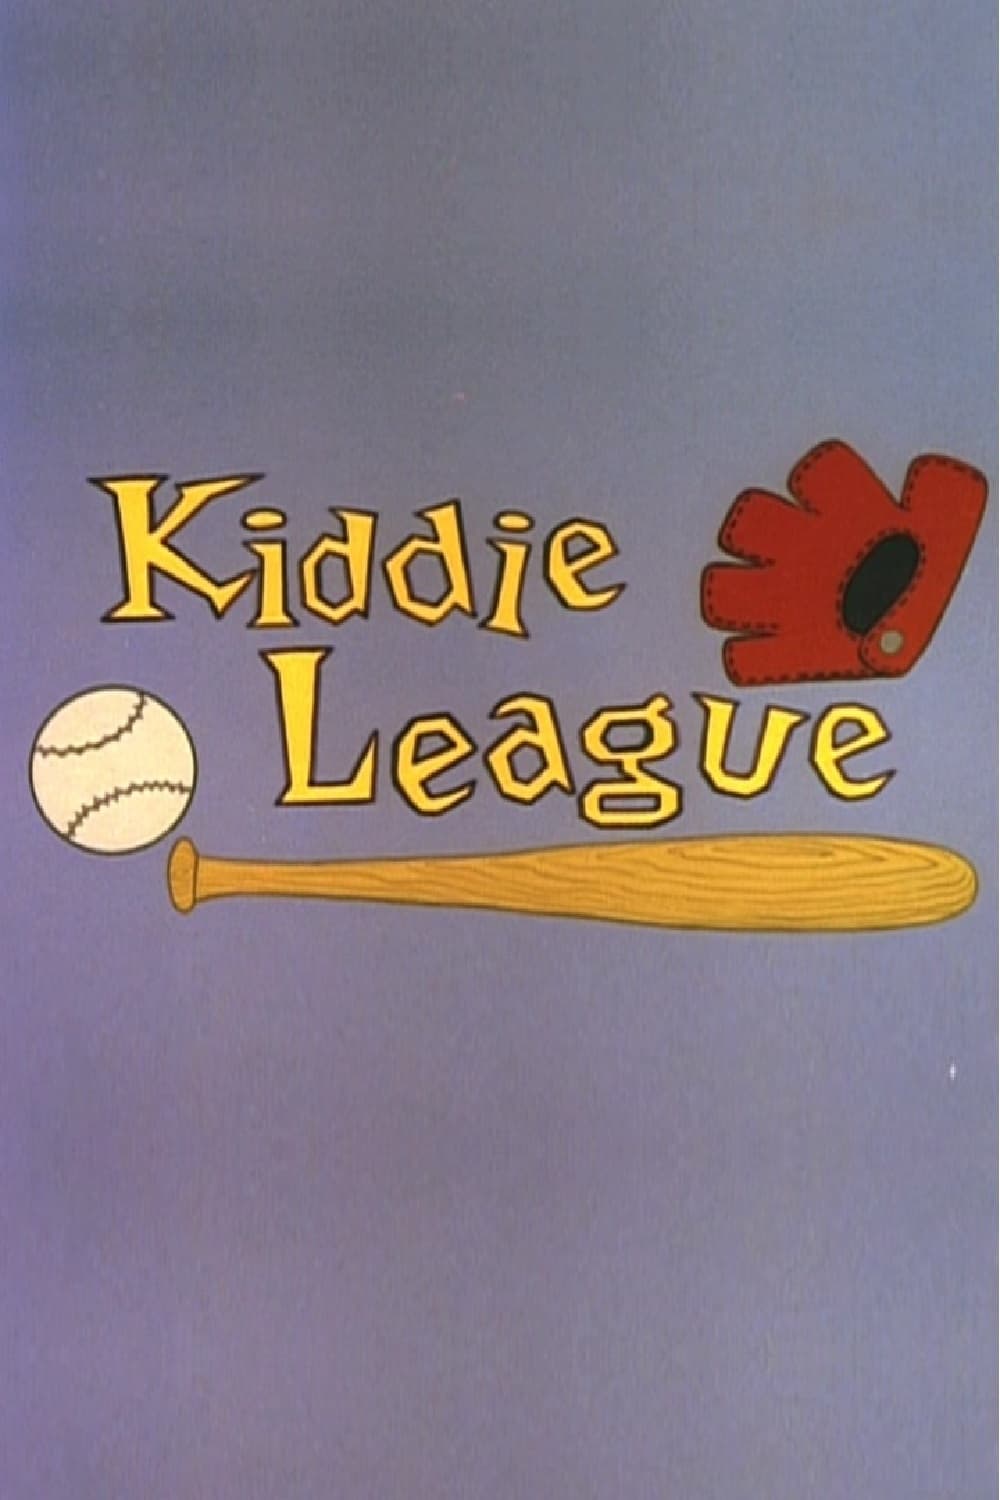 Kiddie League (1959)